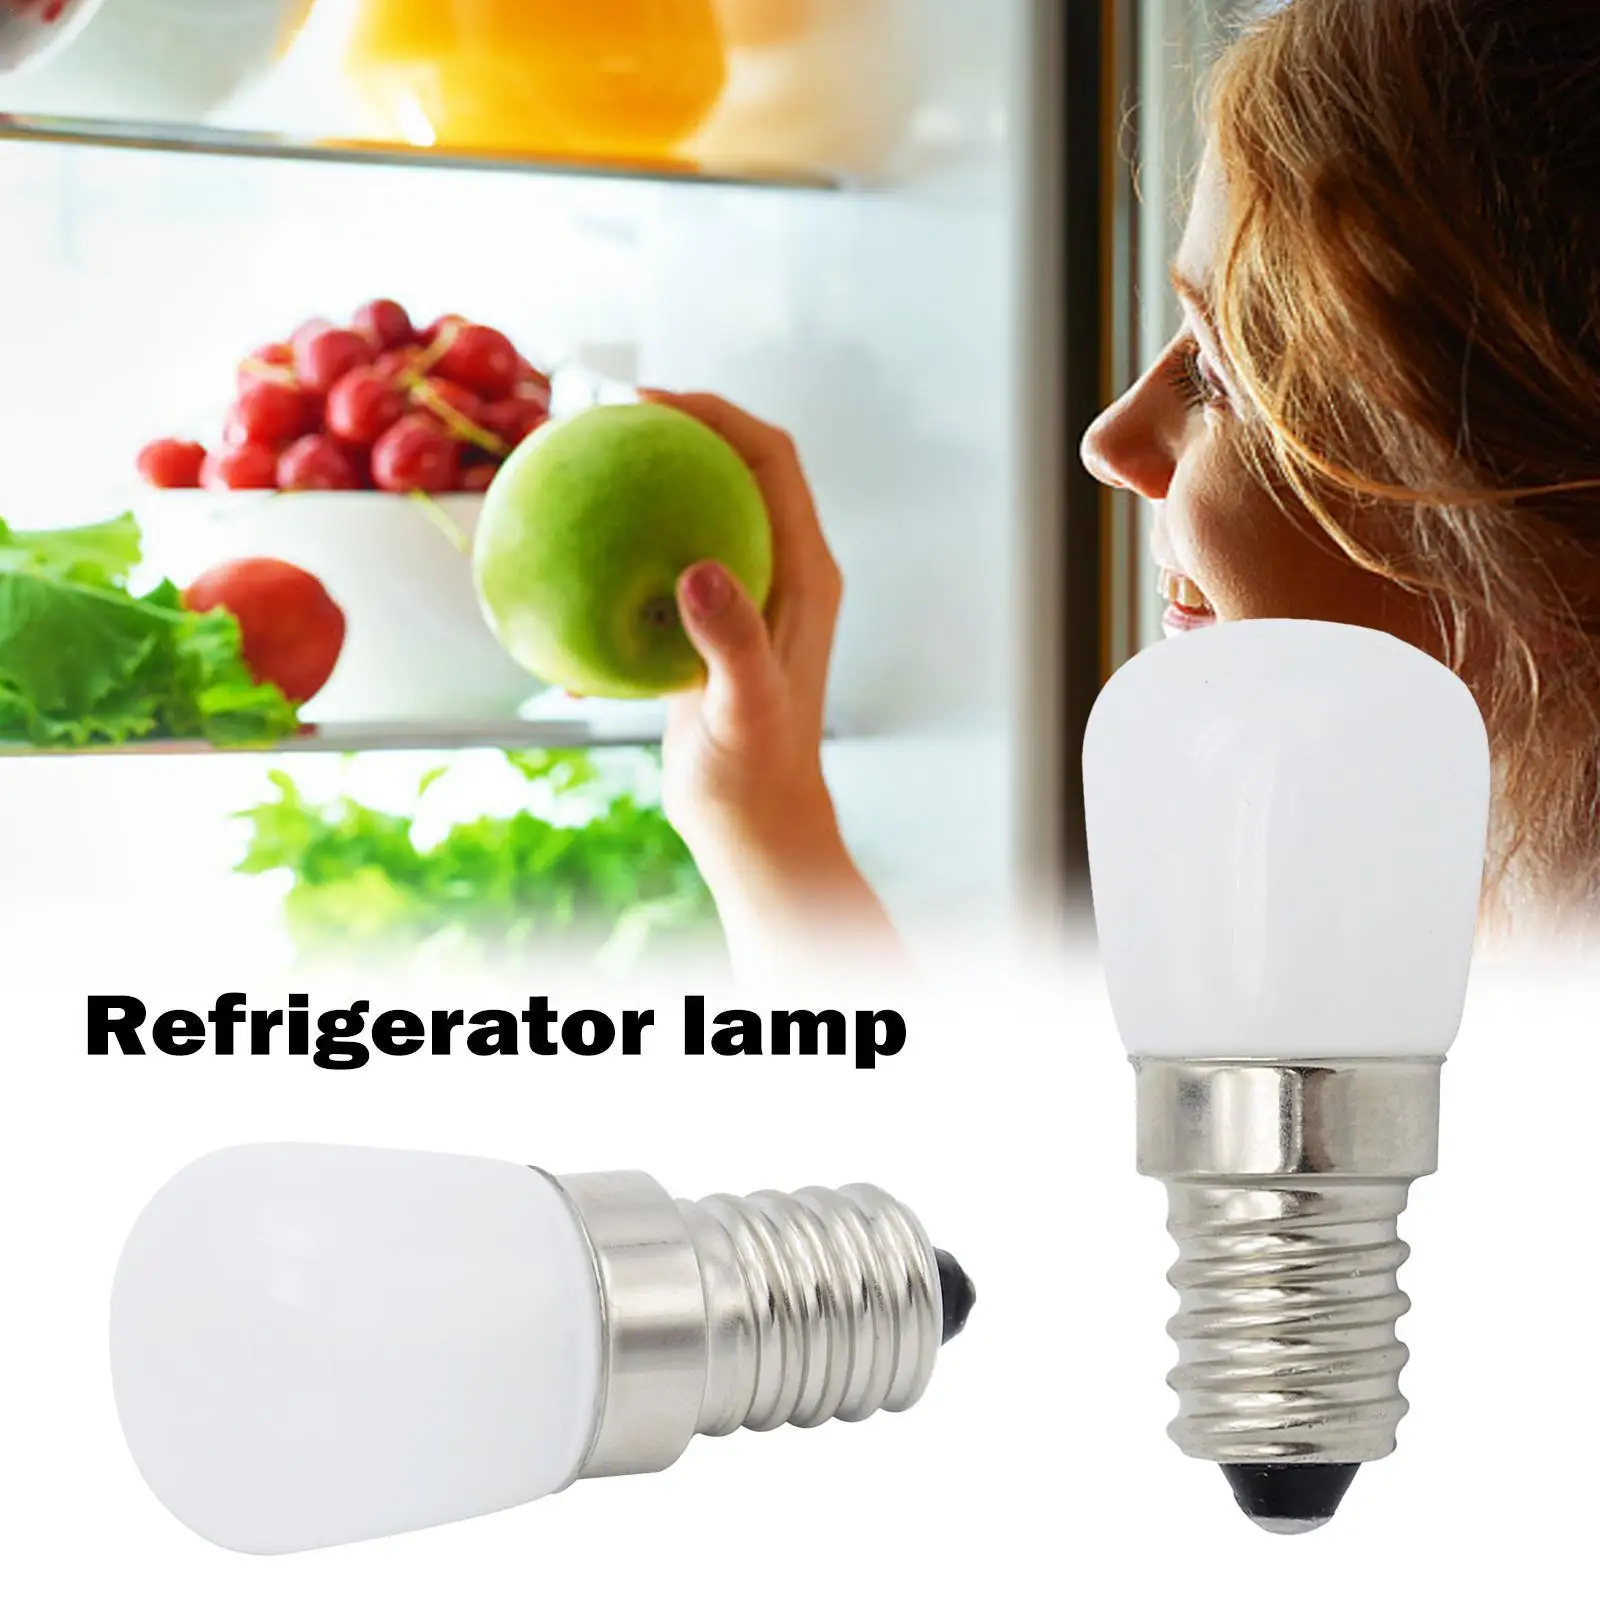 

2W E14 LED Fridge Light Bulb Refrigerator Corn Bulb Lamp White/Warm SMD2835 Replace 220-240V White AC Halogen Light LED A1I4